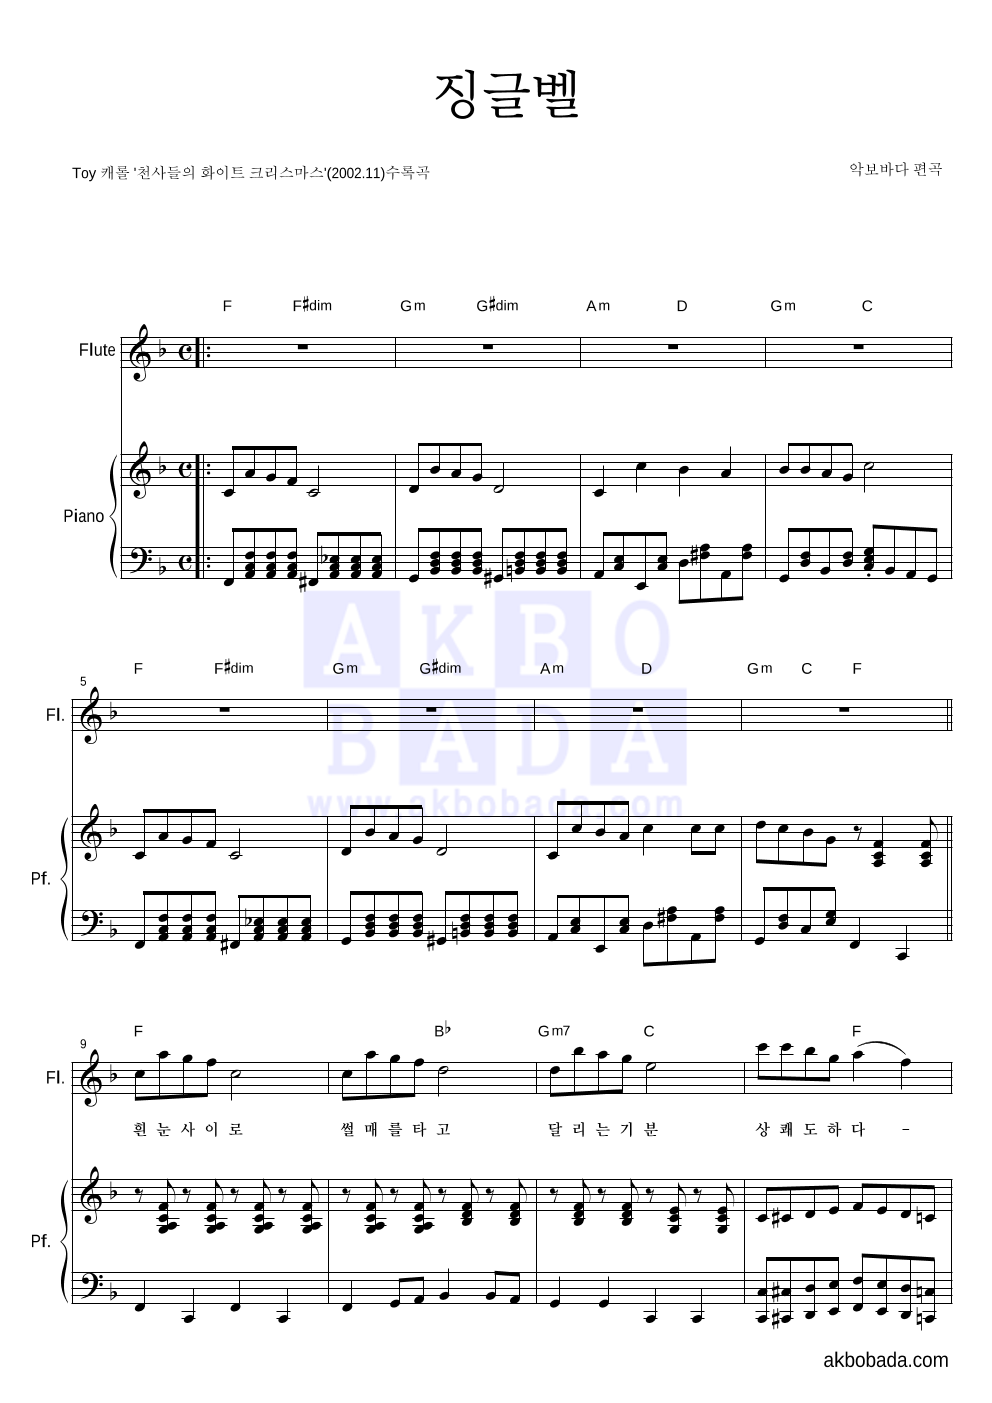 크리스마스 캐롤 - 징글벨 (흰눈사이로) 플룻&피아노 악보 